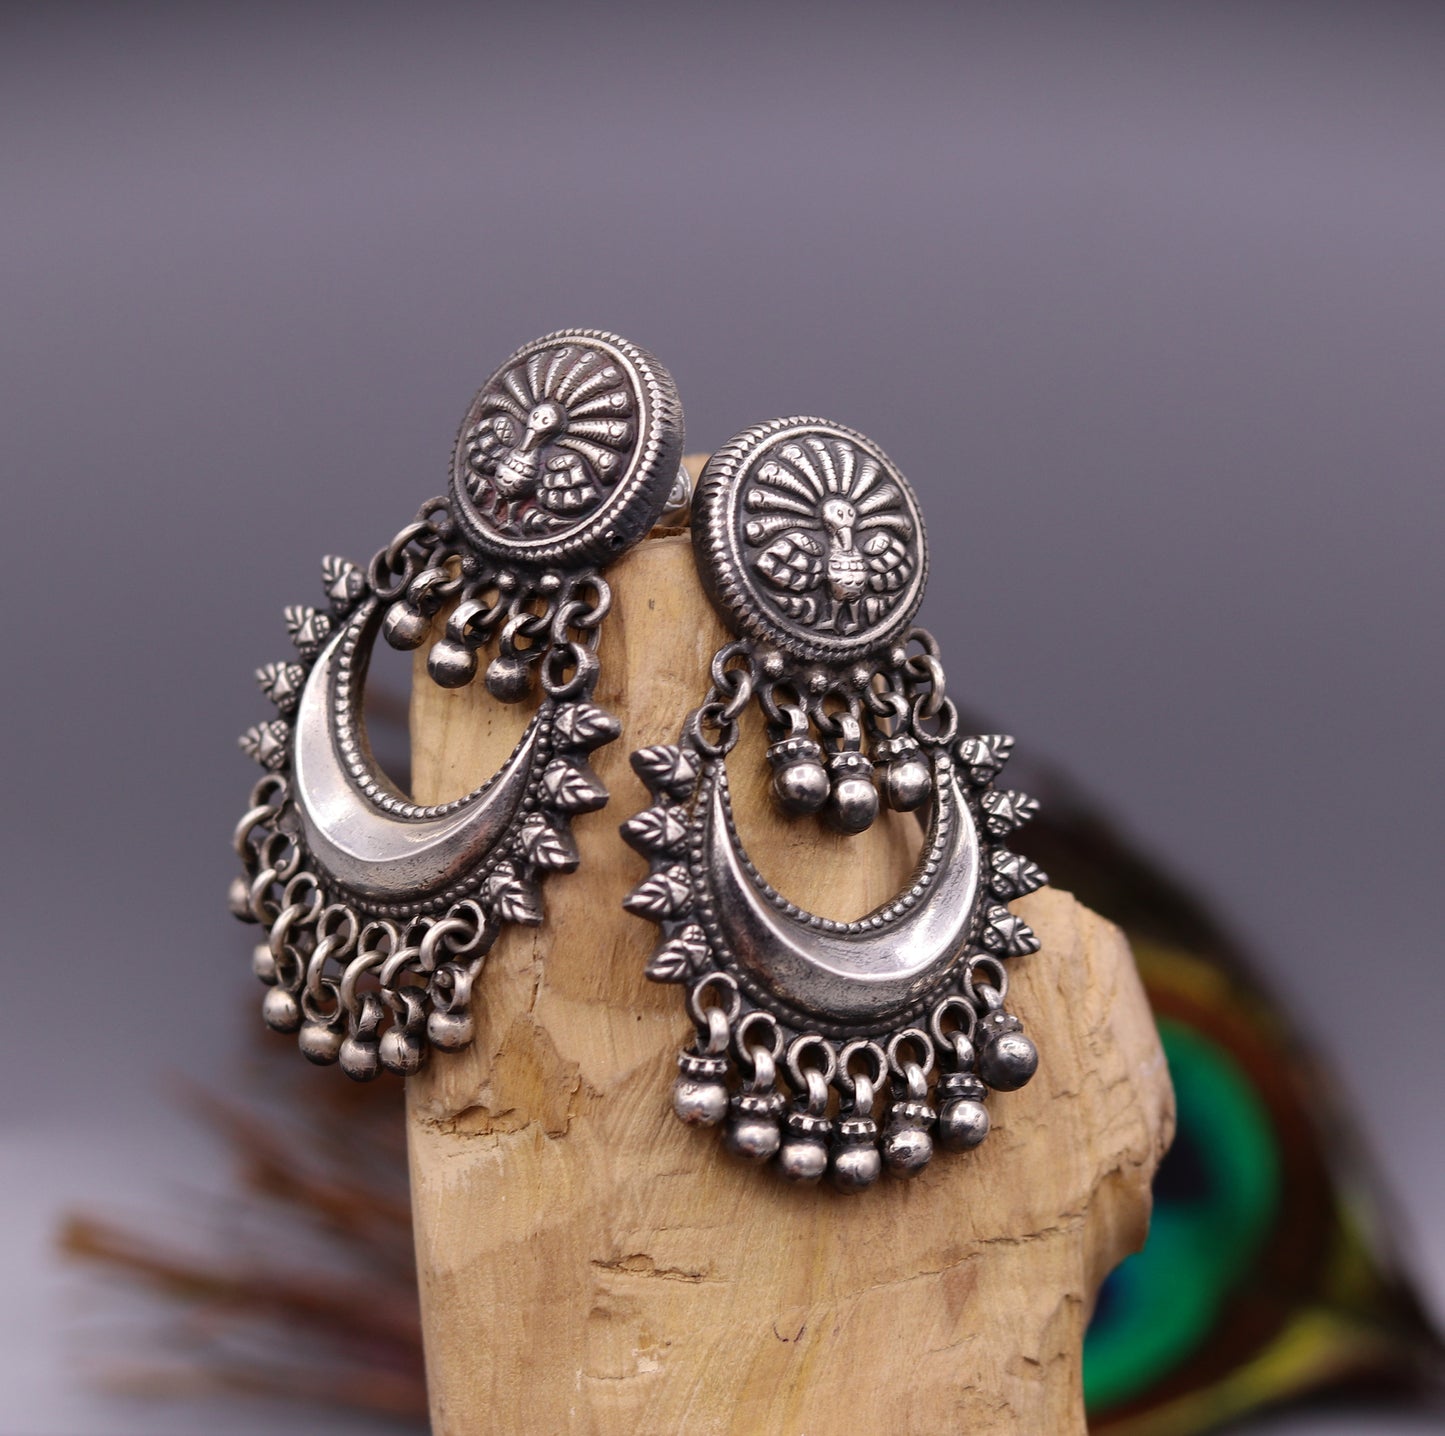 Oxidized 925 sterling silver tribal Earrings,half moon earrings, stud earring hanging bells, drop dangle jewelry wedding party jewelry s380 - TRIBAL ORNAMENTS